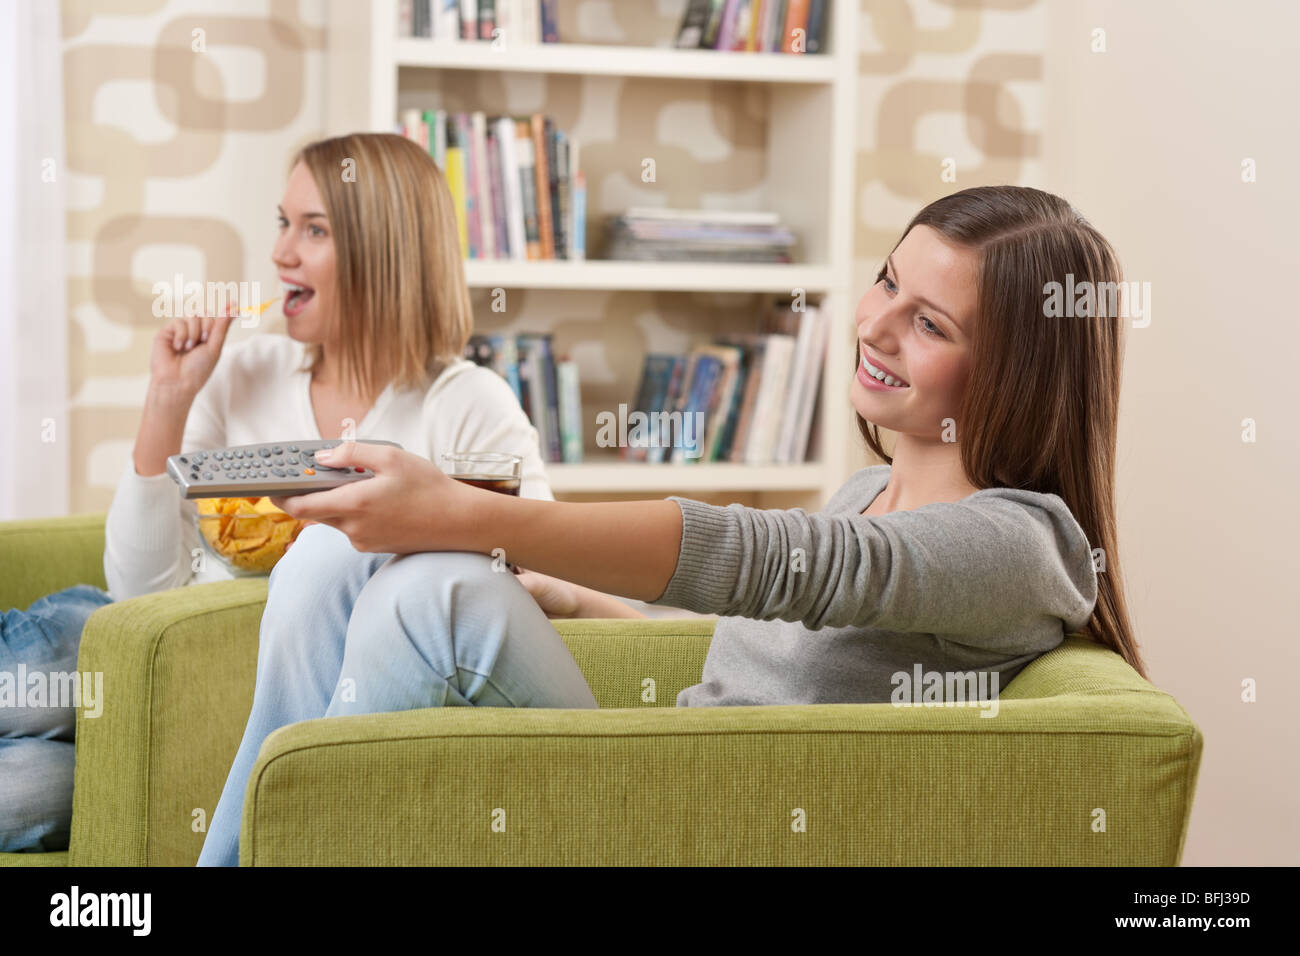 Deux étudiants - une adolescente à regarder la télévision et manger des chips dans un salon moderne Banque D'Images